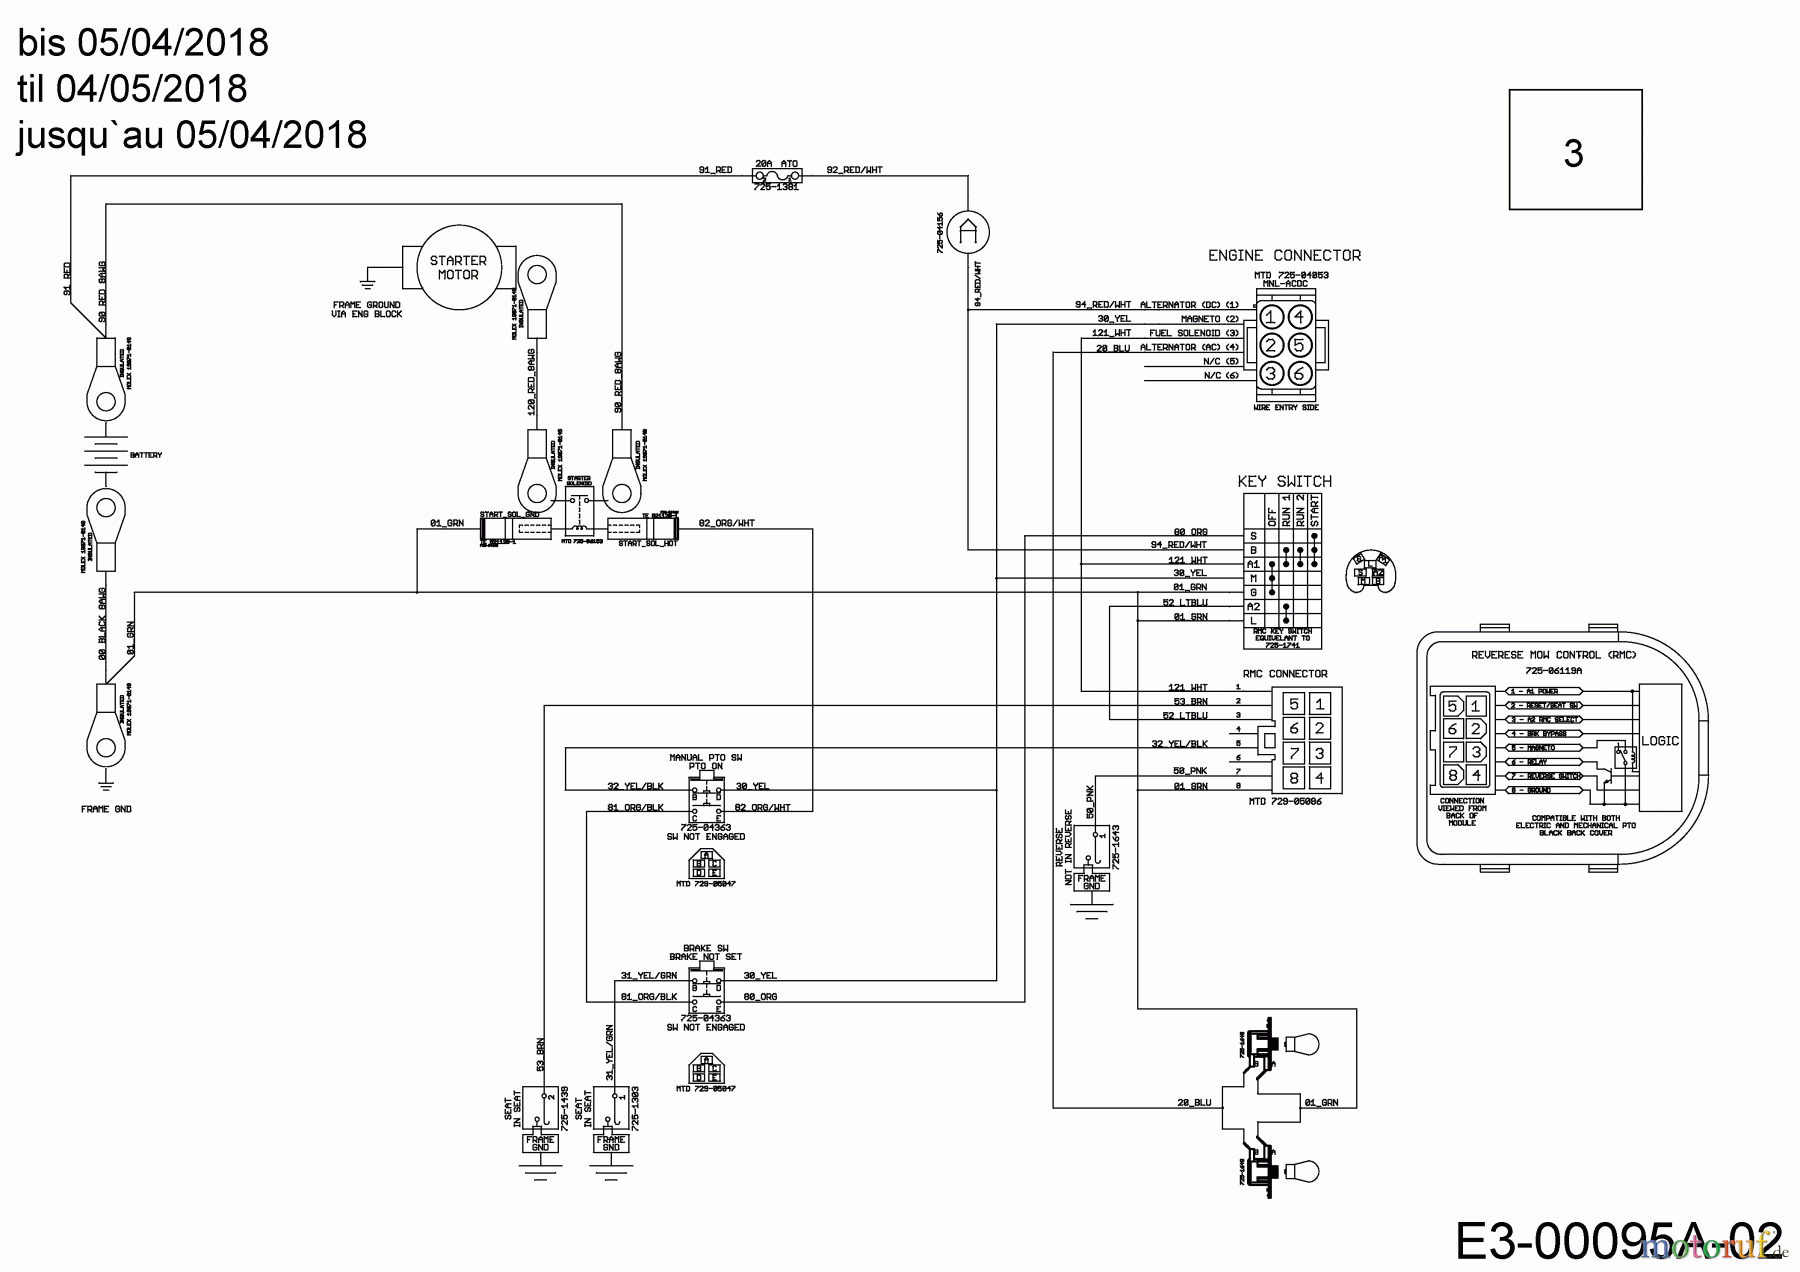  Cub Cadet Lawn tractors LT3 PS107K 13AV79DG603  (2018) Wiring diagram til 04/05/2018